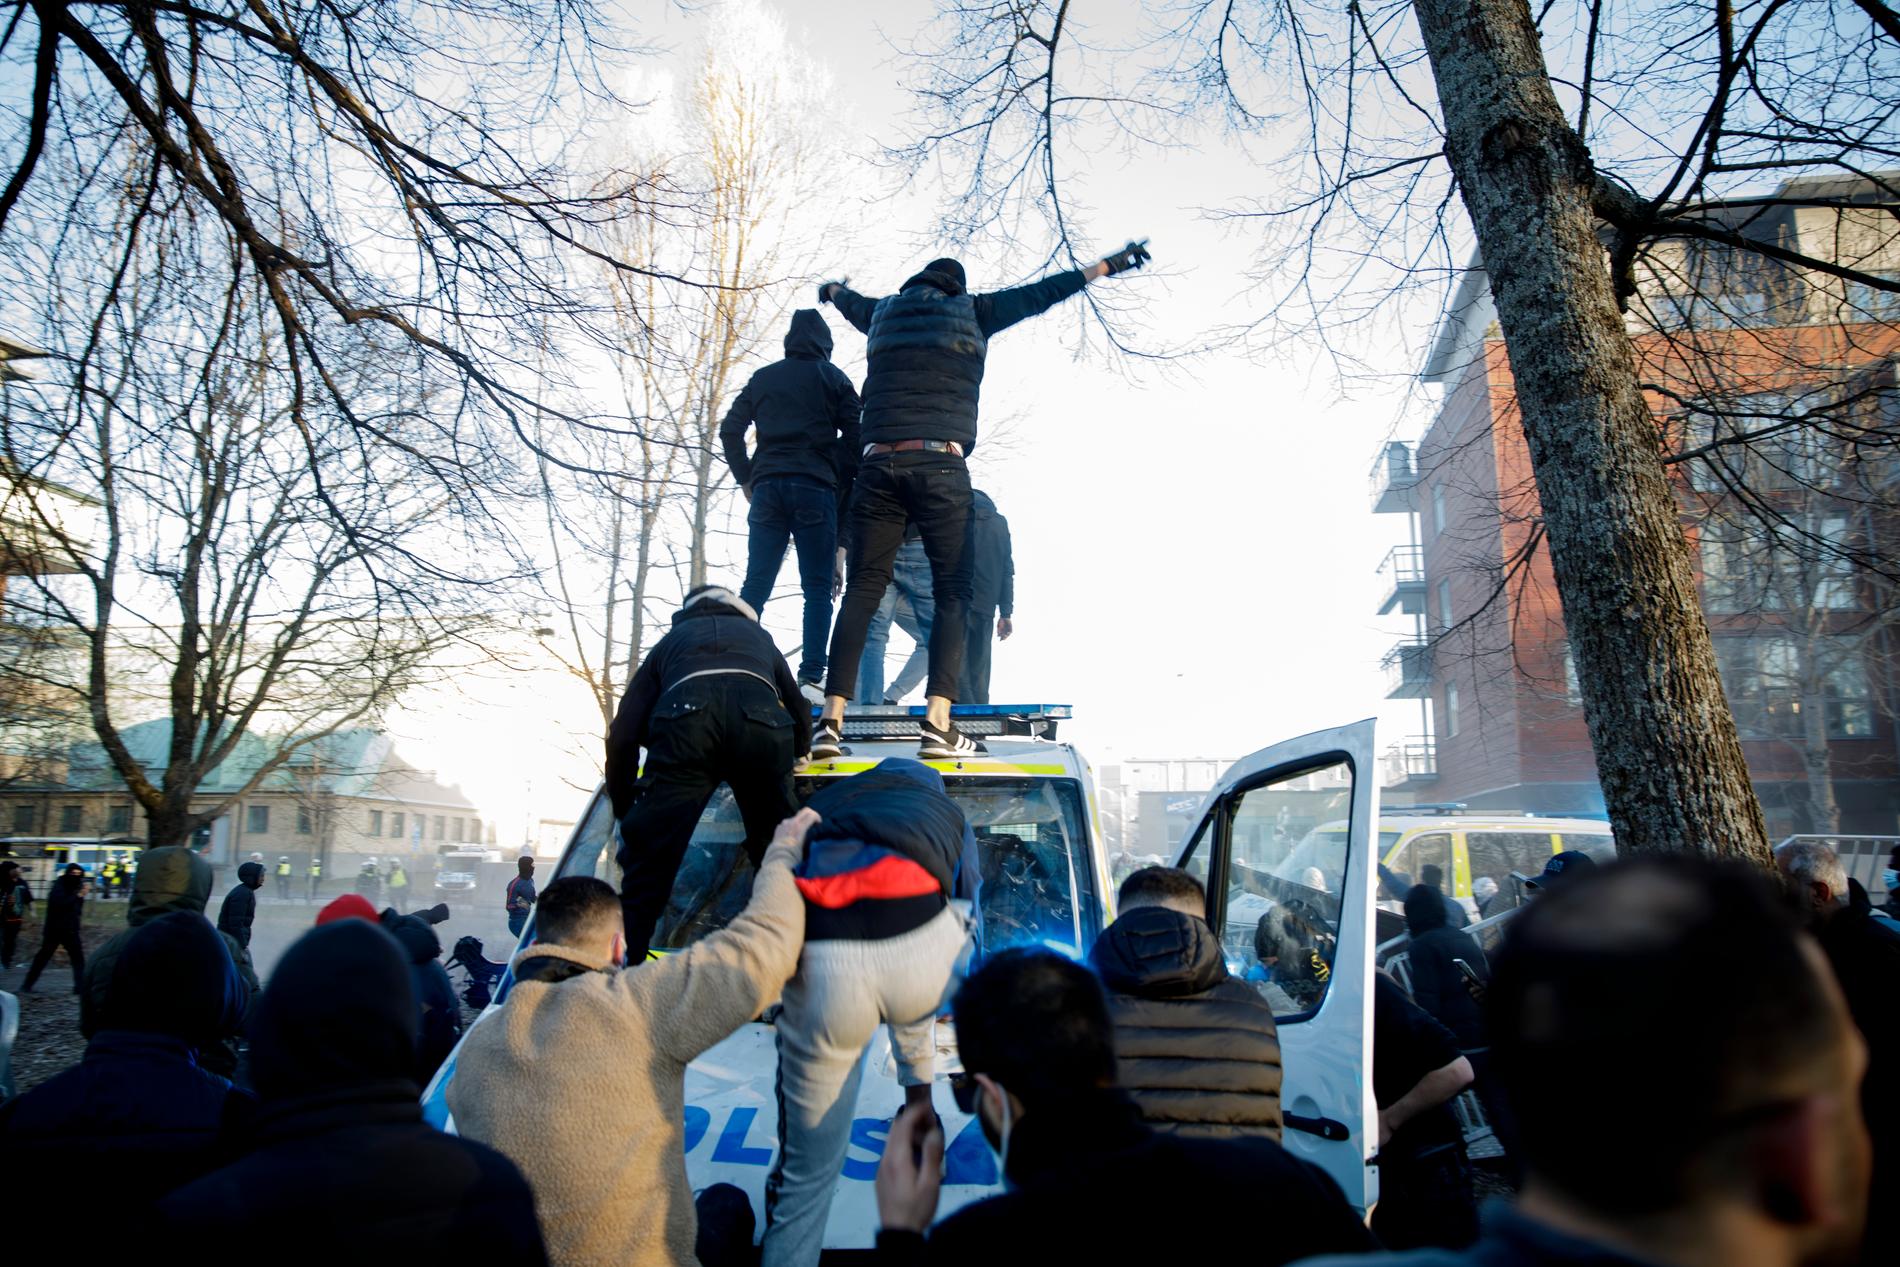 Motdemonstranter klättrar upp på en polisbuss vid Sveaparken i Örebro, där Rasmus Paludan, partiledare för det danska högerextrema partiet Stram kurs, har fått tillstånd för en sammankomst på långfredagen.